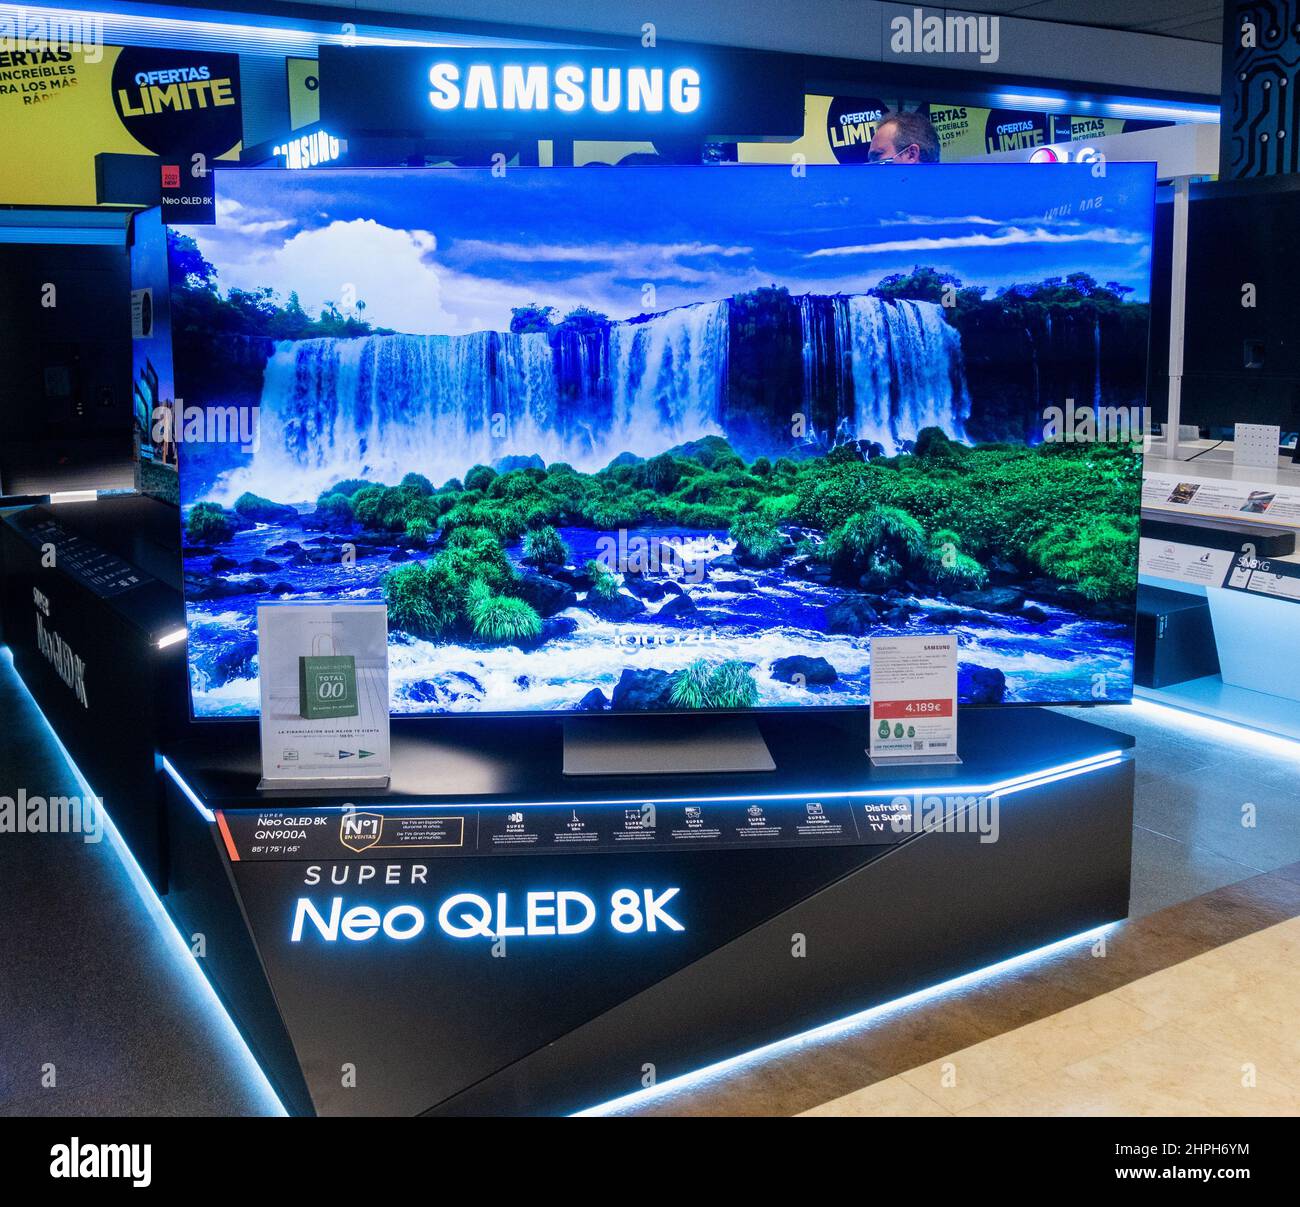 LG anuncia su televisor Súper UHD 8K de 98 pulgadas en CES 2016